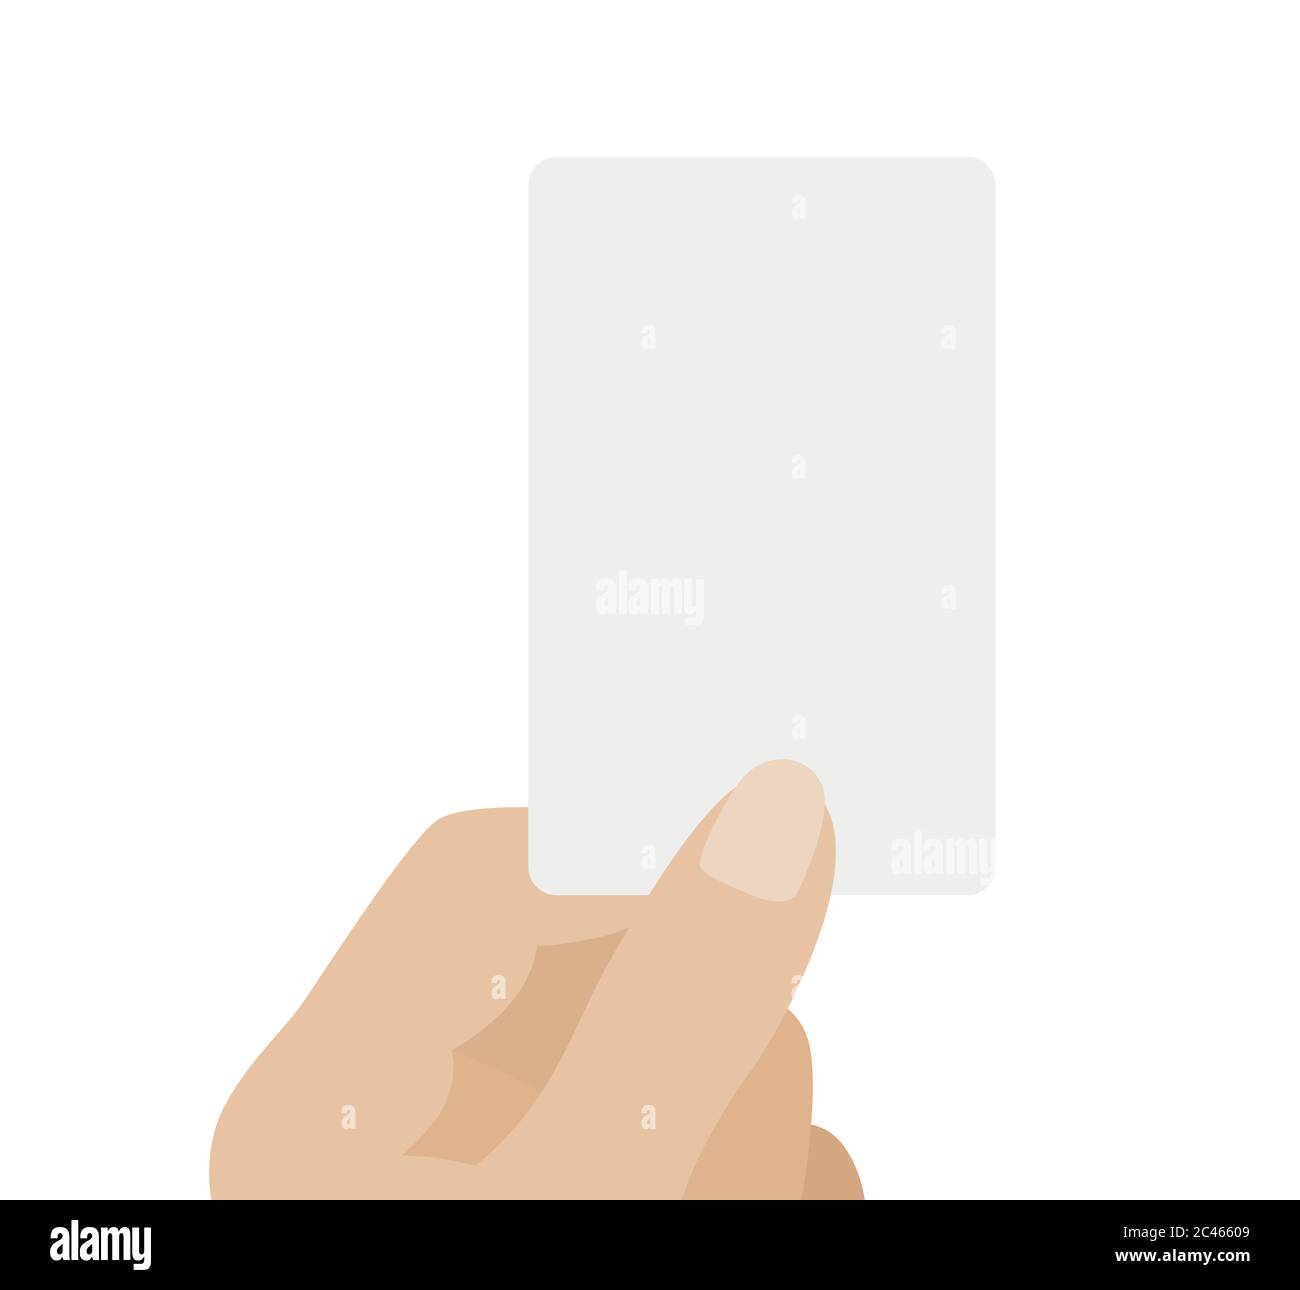 Hand hält weiße Karte, isoliert auf weißem Hintergrund. Vektorgrafik mit flachem Design Stock Vektor